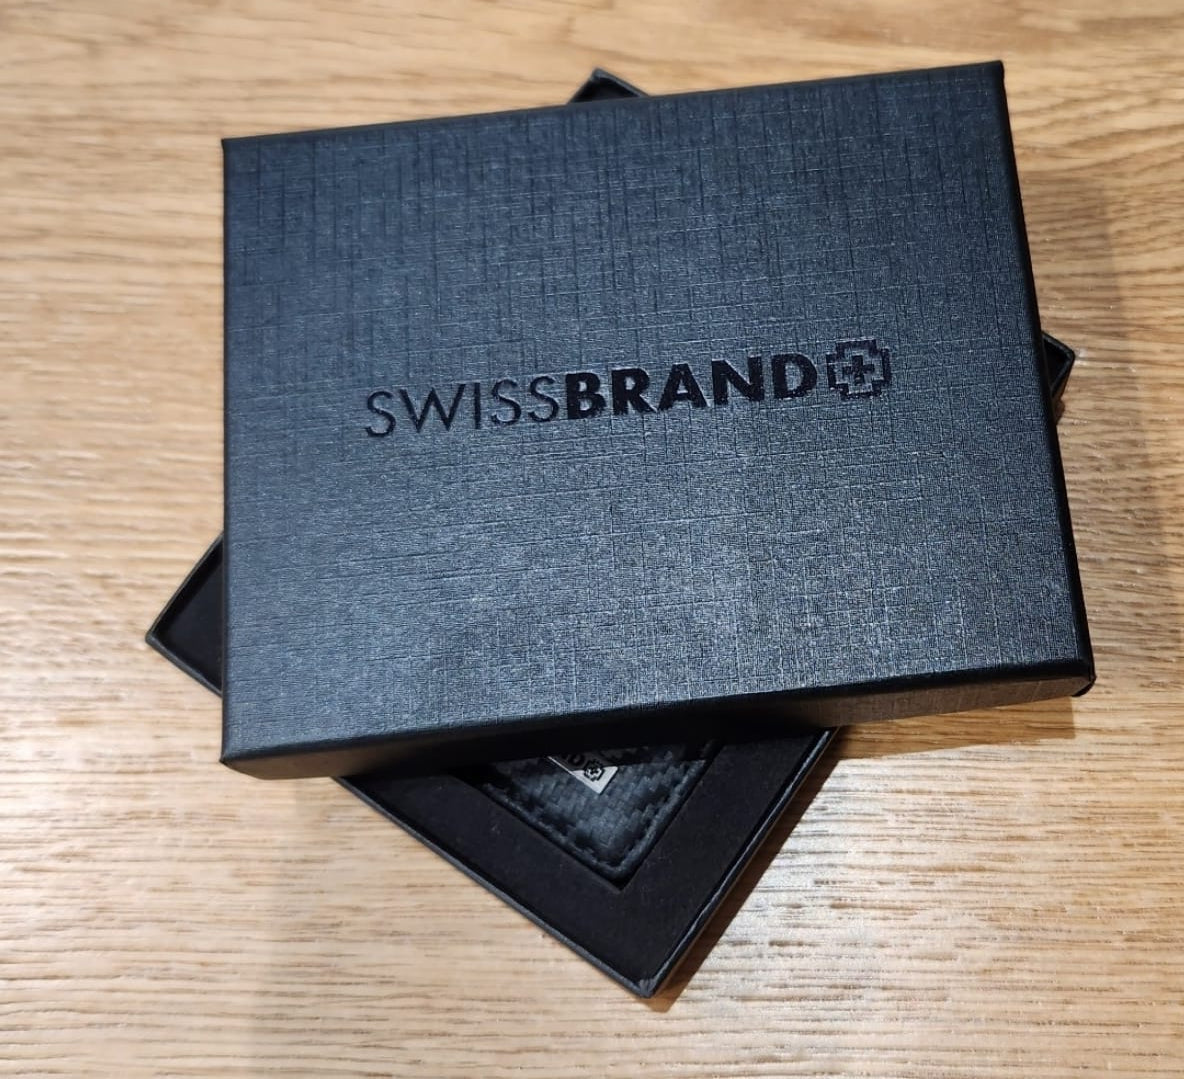 ✮מותג שוויצרי מקורי✮ ארנק עור לדרכון כרטיסי אשראי וסים כארד מבית המותג SwissBrand דגם Monaco Passport Holder